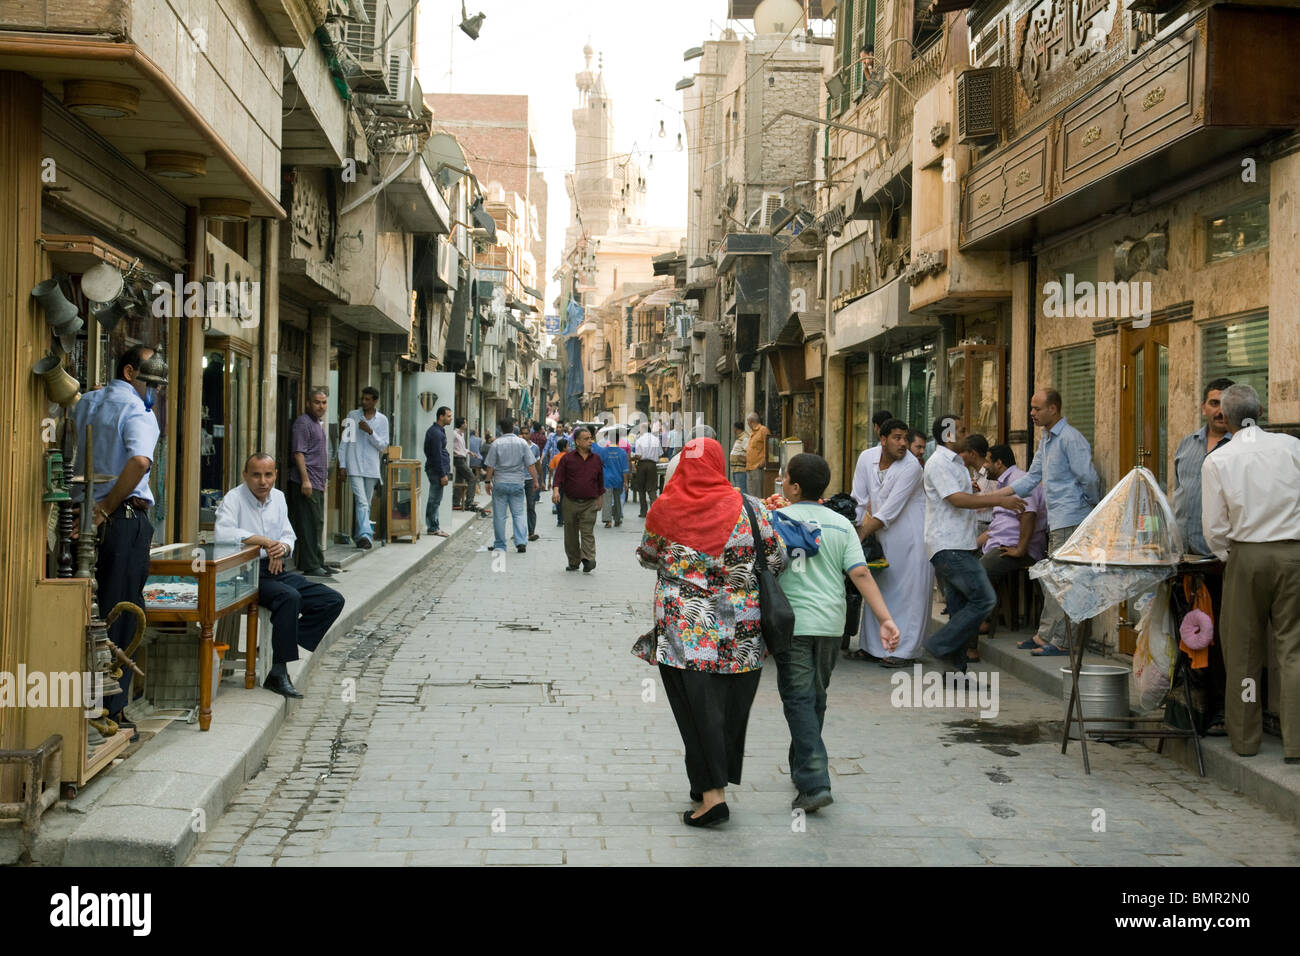 Straßenszene Kairo; Alltag Ägypten; Menschen auf dem Khan al Khalili Markt, islamisches Viertel, Kairo Ägypten Stockfoto